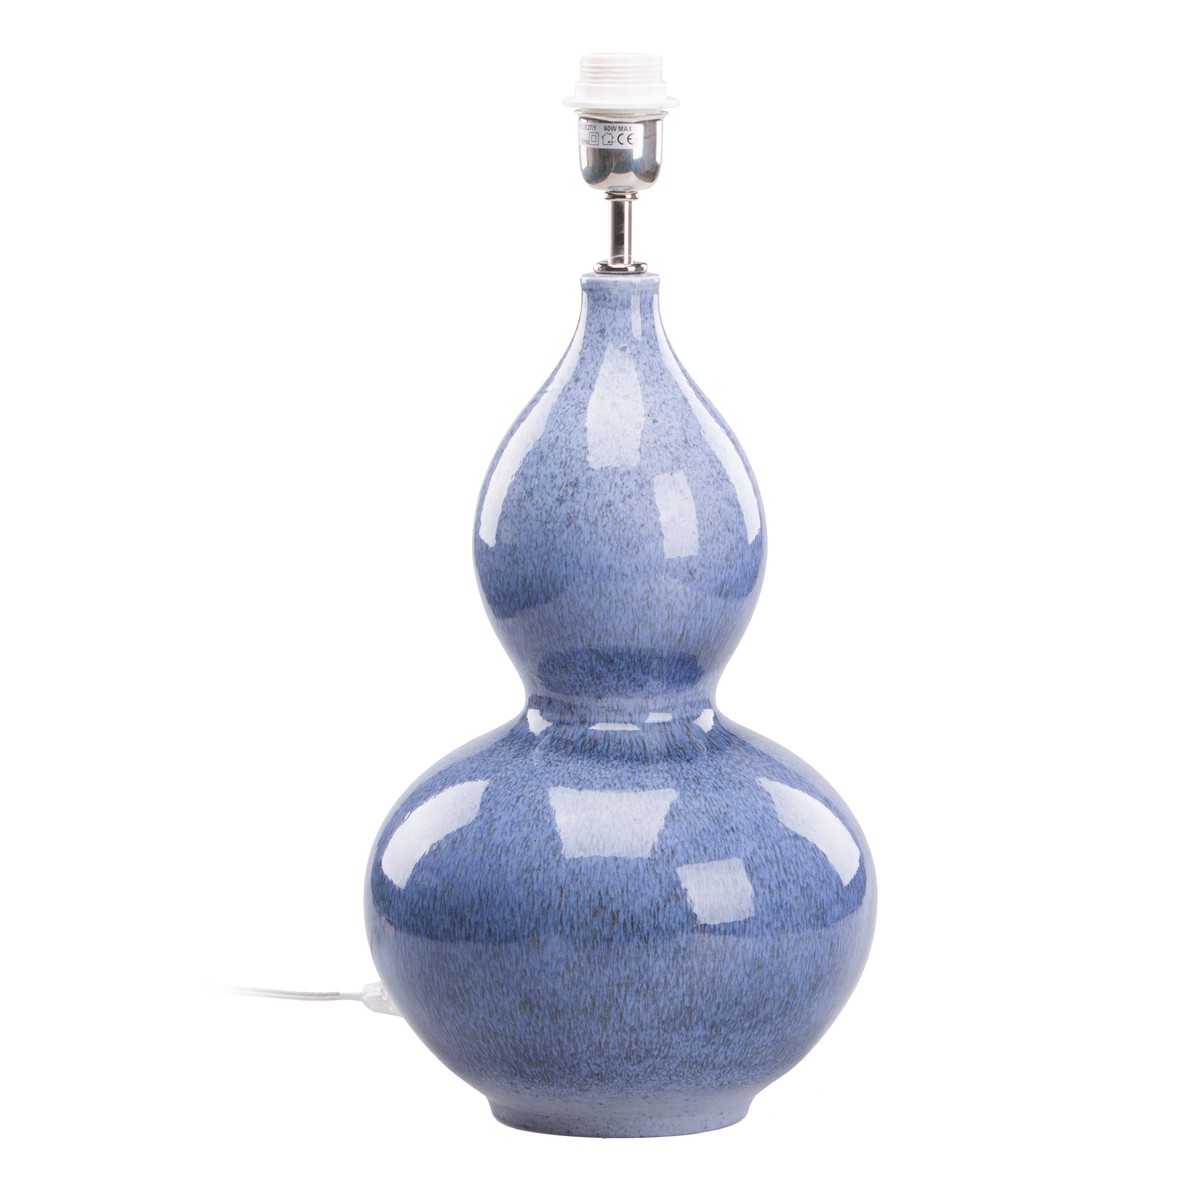   Pied de lampe Setubal en faïence Bleu lapis-lazuli 25x41cm